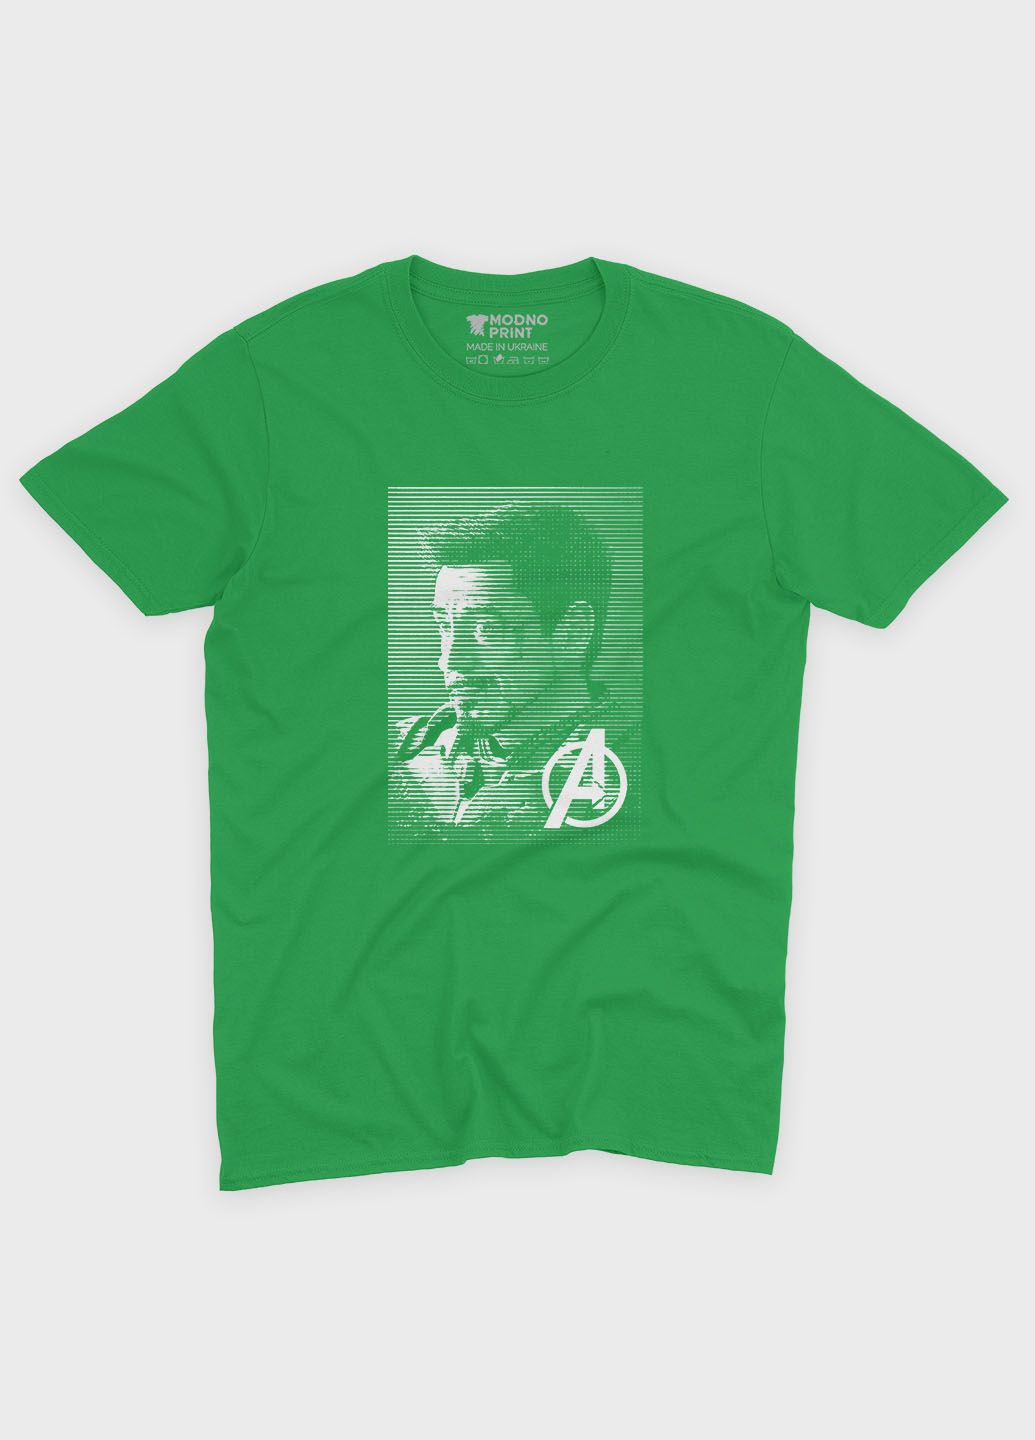 Зелена демісезонна футболка для хлопчика з принтом супергероя - залізна людина (ts001-1-keg-006-016-026-b) Modno